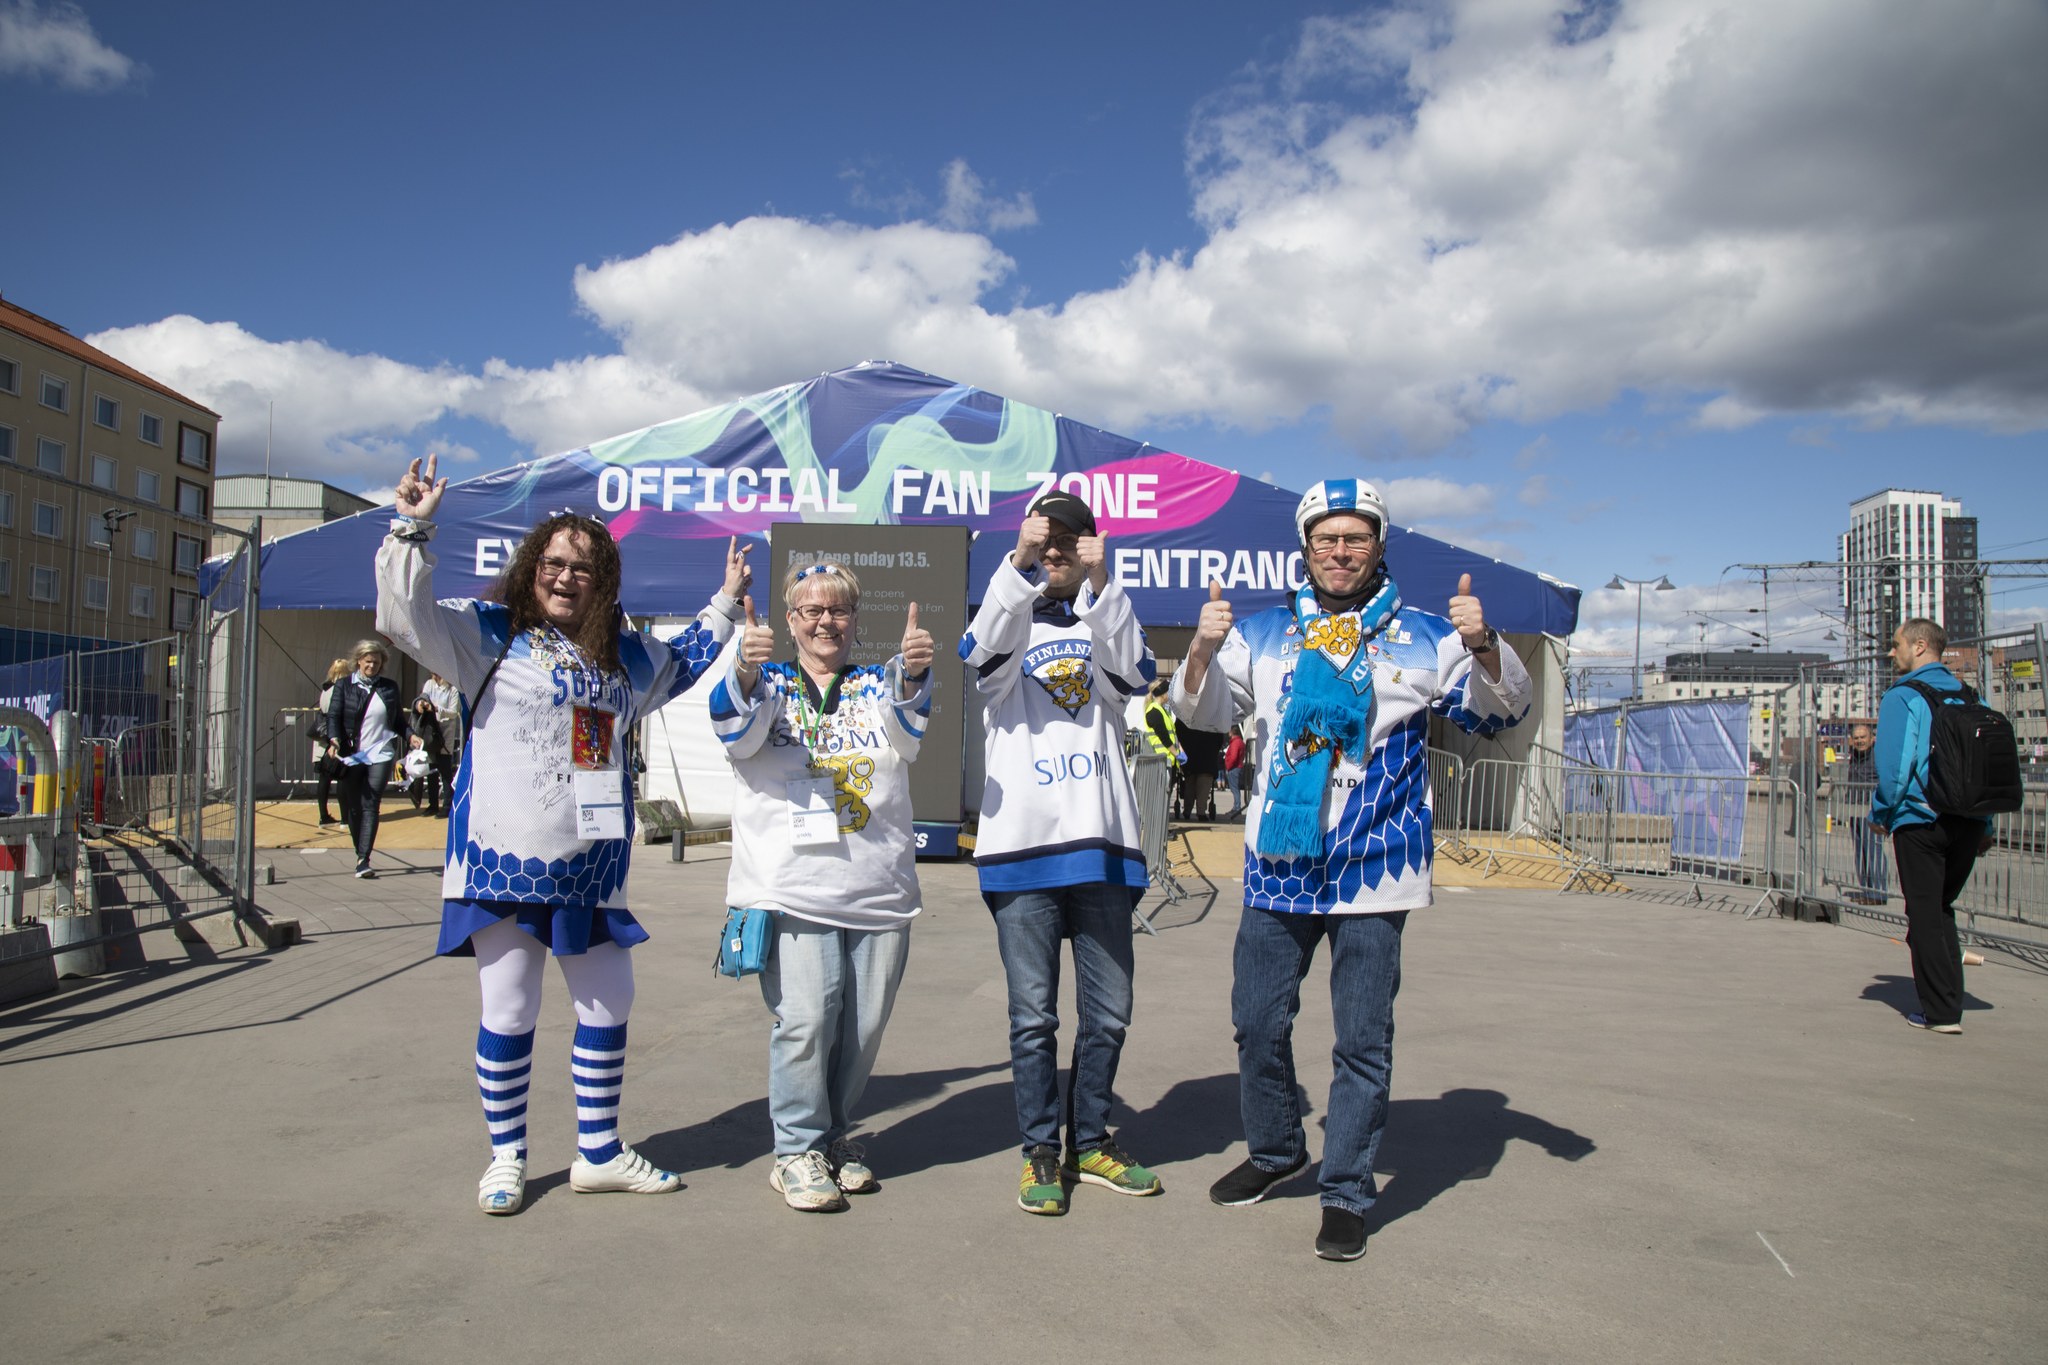 Hockey fans in fan zone with Finnish game jerseys